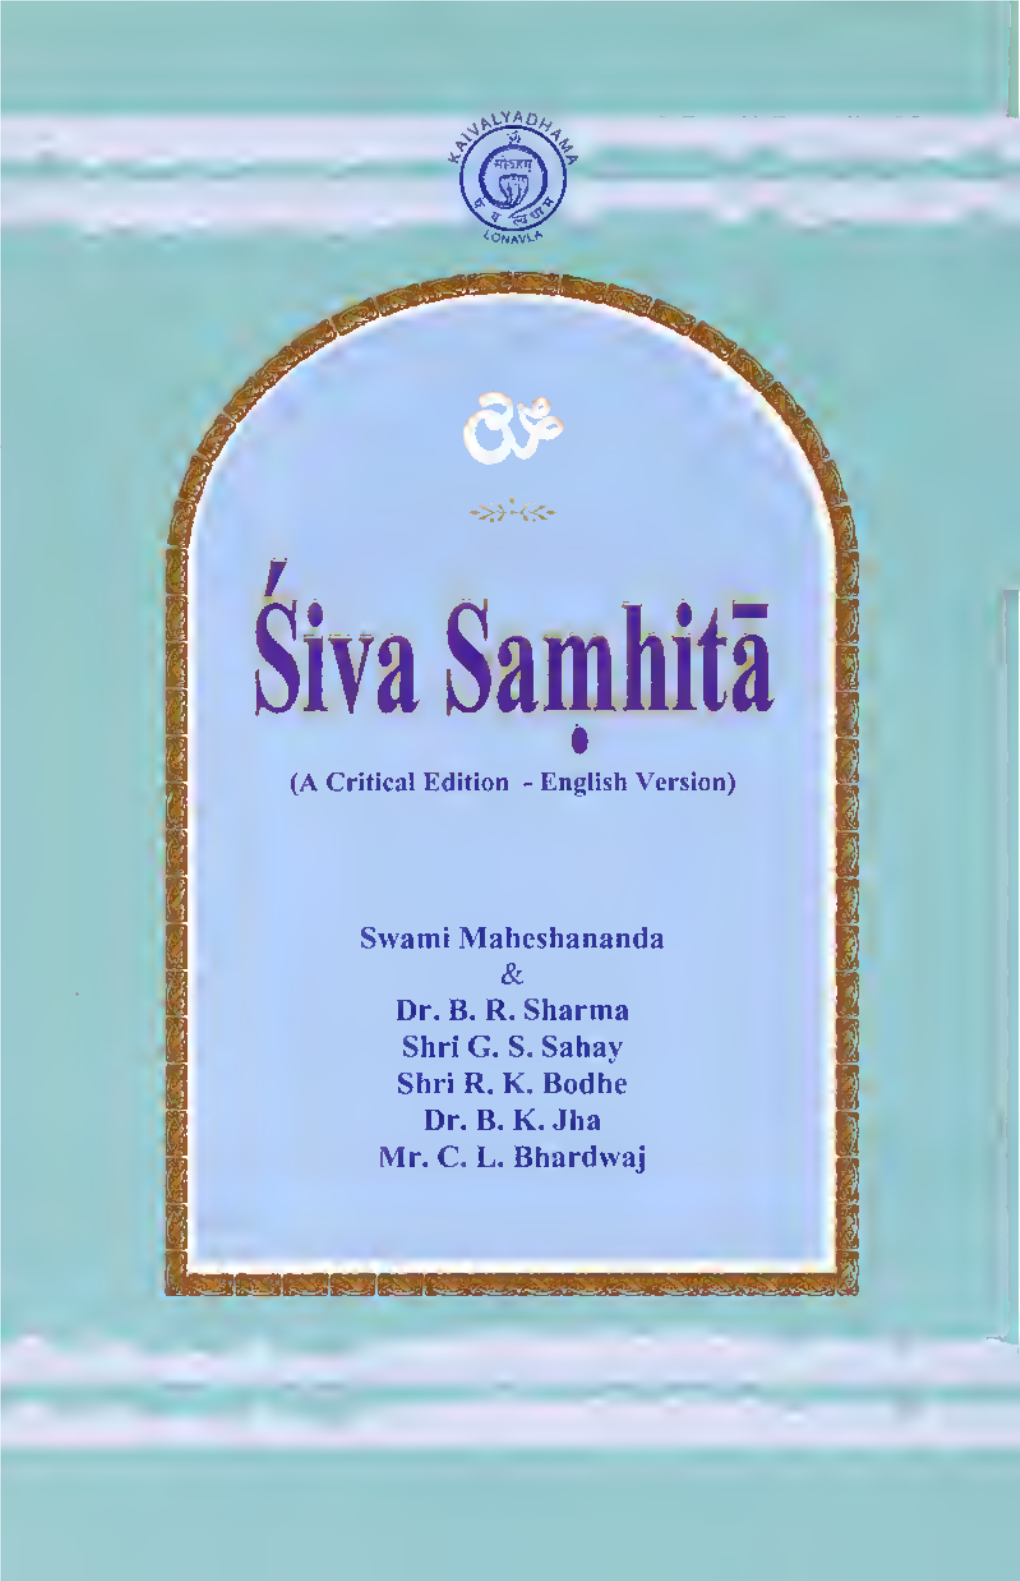 Siva Samhita Critical Edition Swami Maheshananda Kaivalya Dham